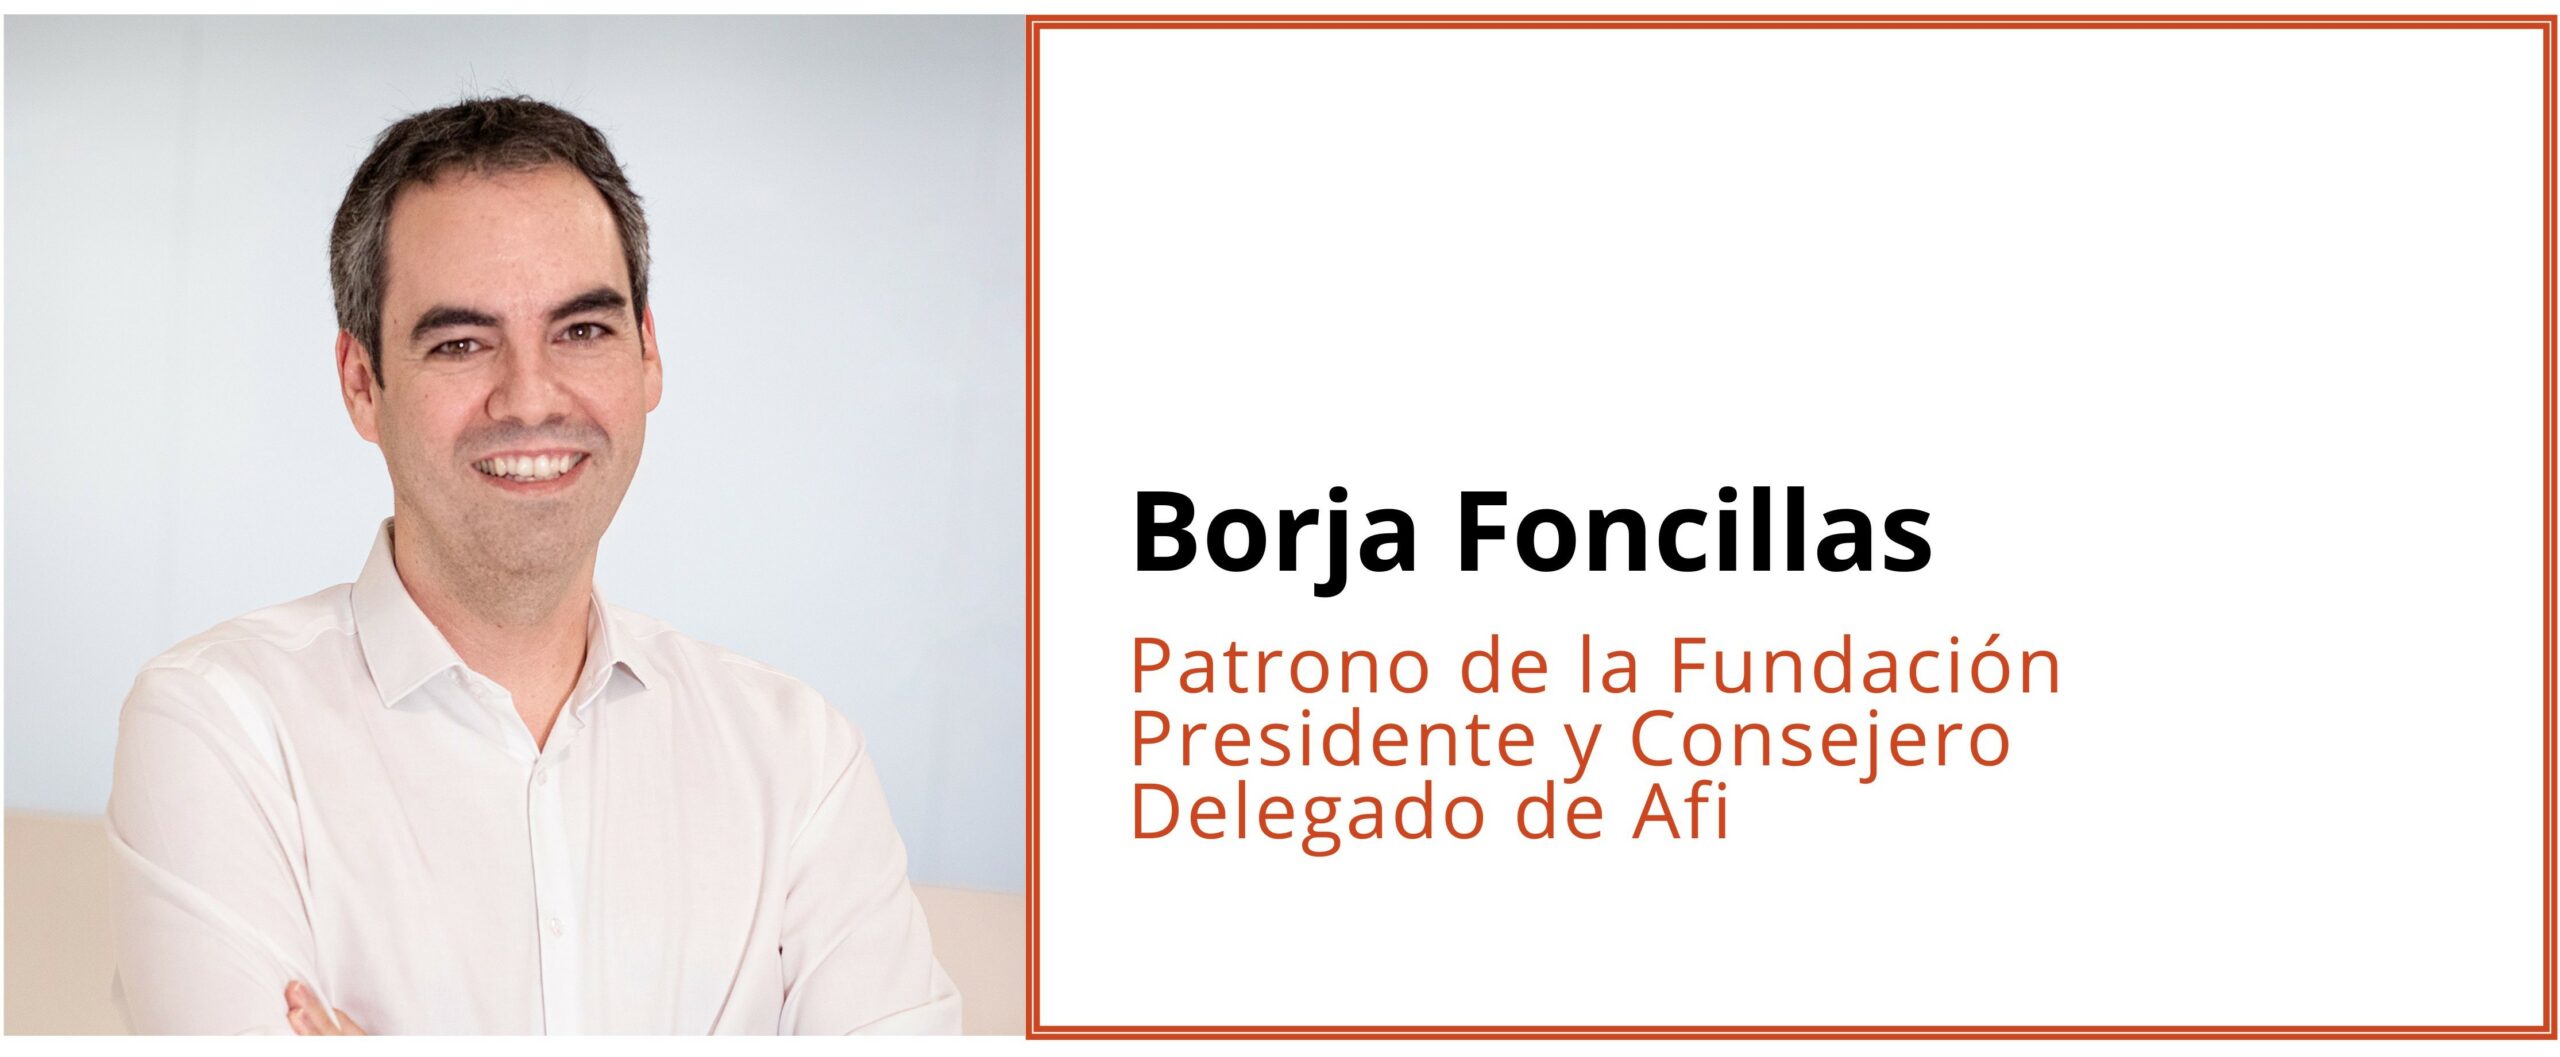 Borja Foncillas